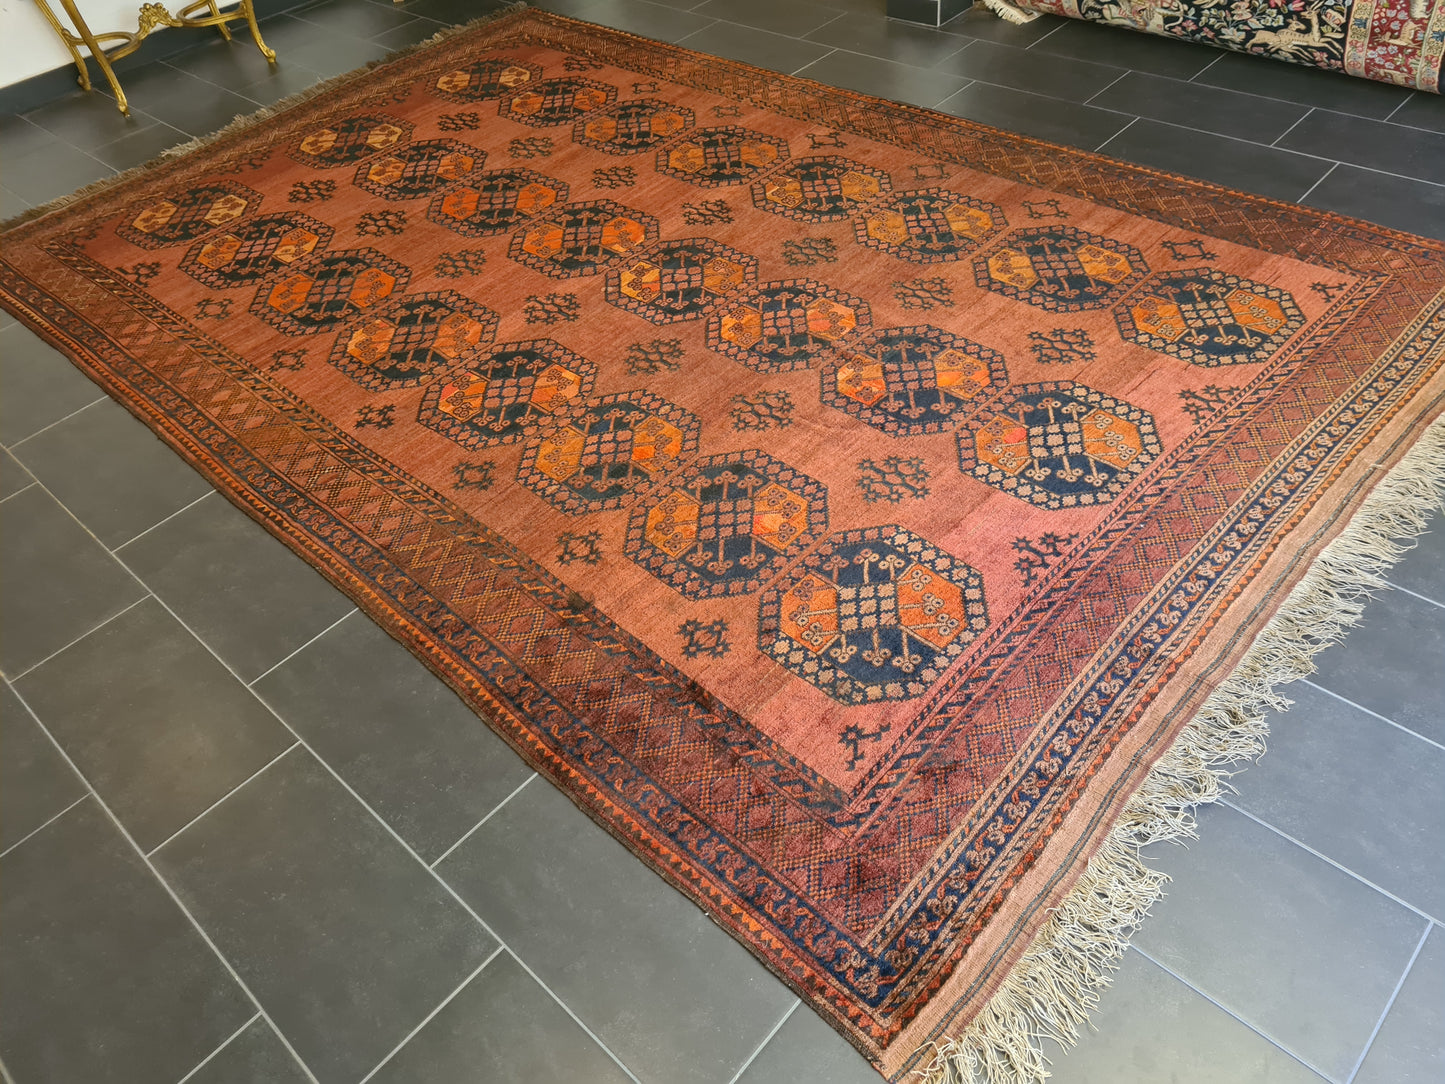 Wertvoller Antiker Königlicher Palast-Teppich Handgeknüpfter Orientteppich Afghan 400x250cm